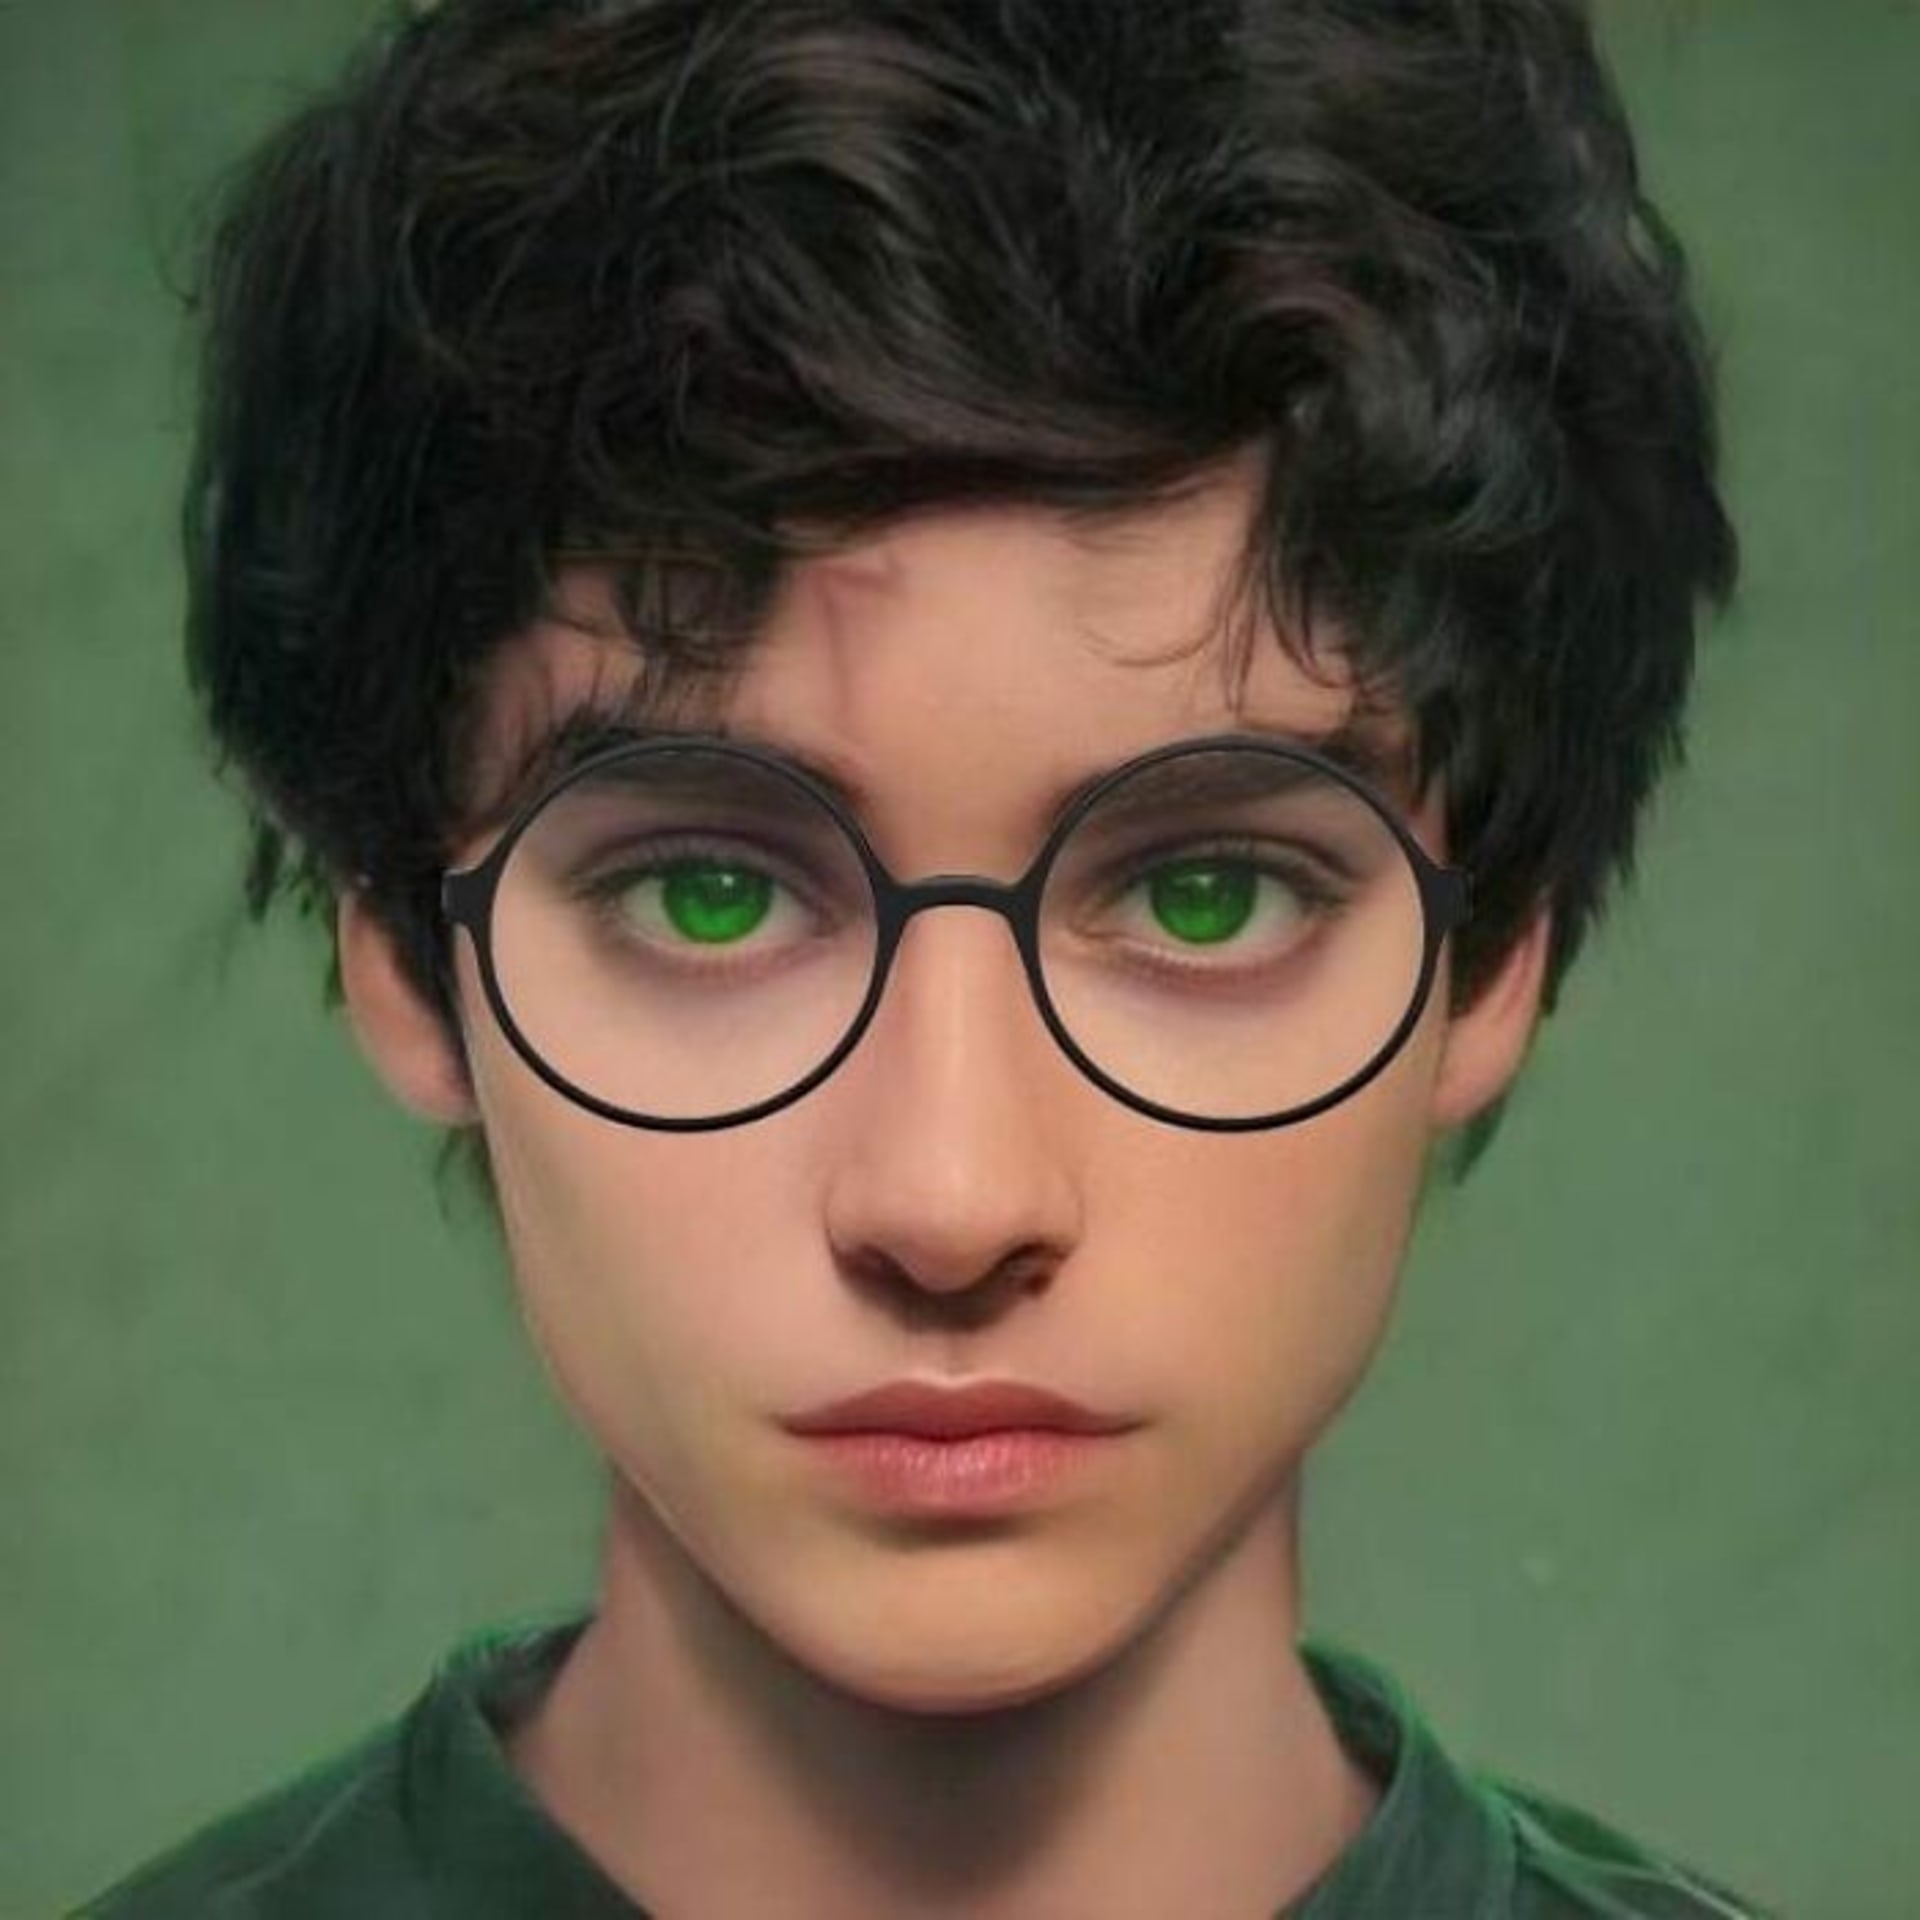 Postavy z Harryho Pottera podle knižní předlohy 7